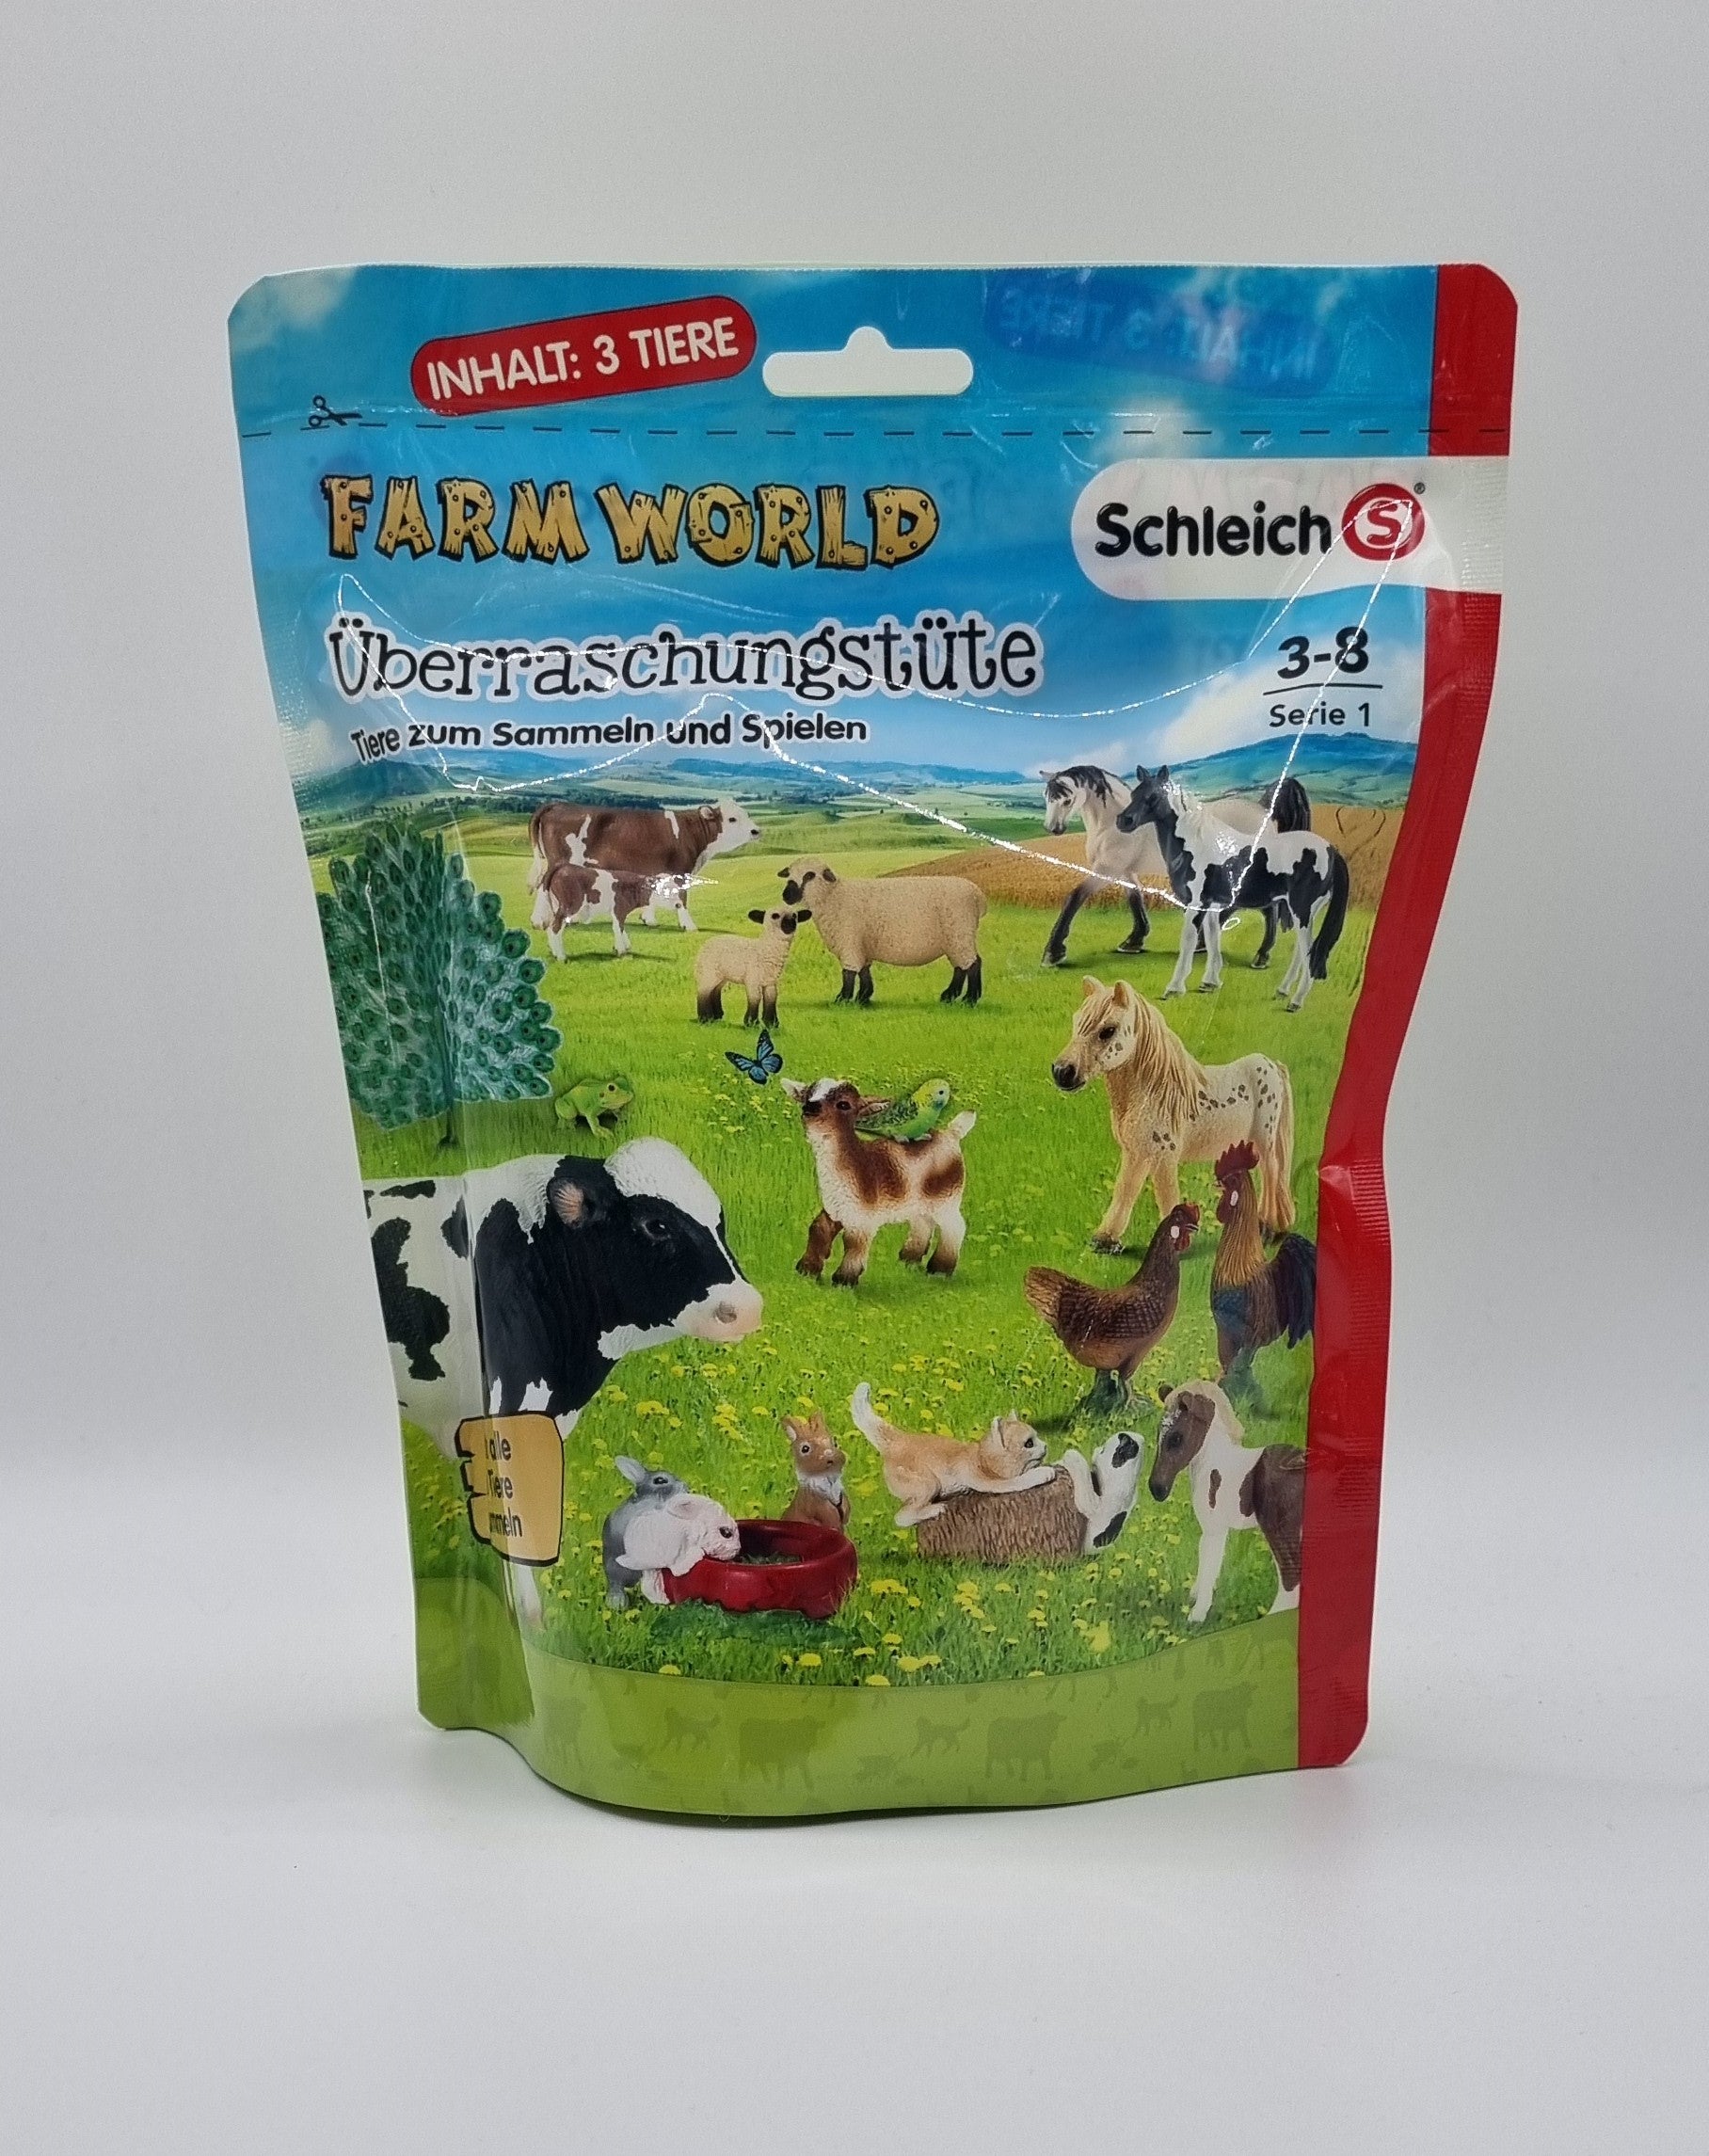 Schleich 87647 Überraschungstüte Farm World Serie 1  Schleich   